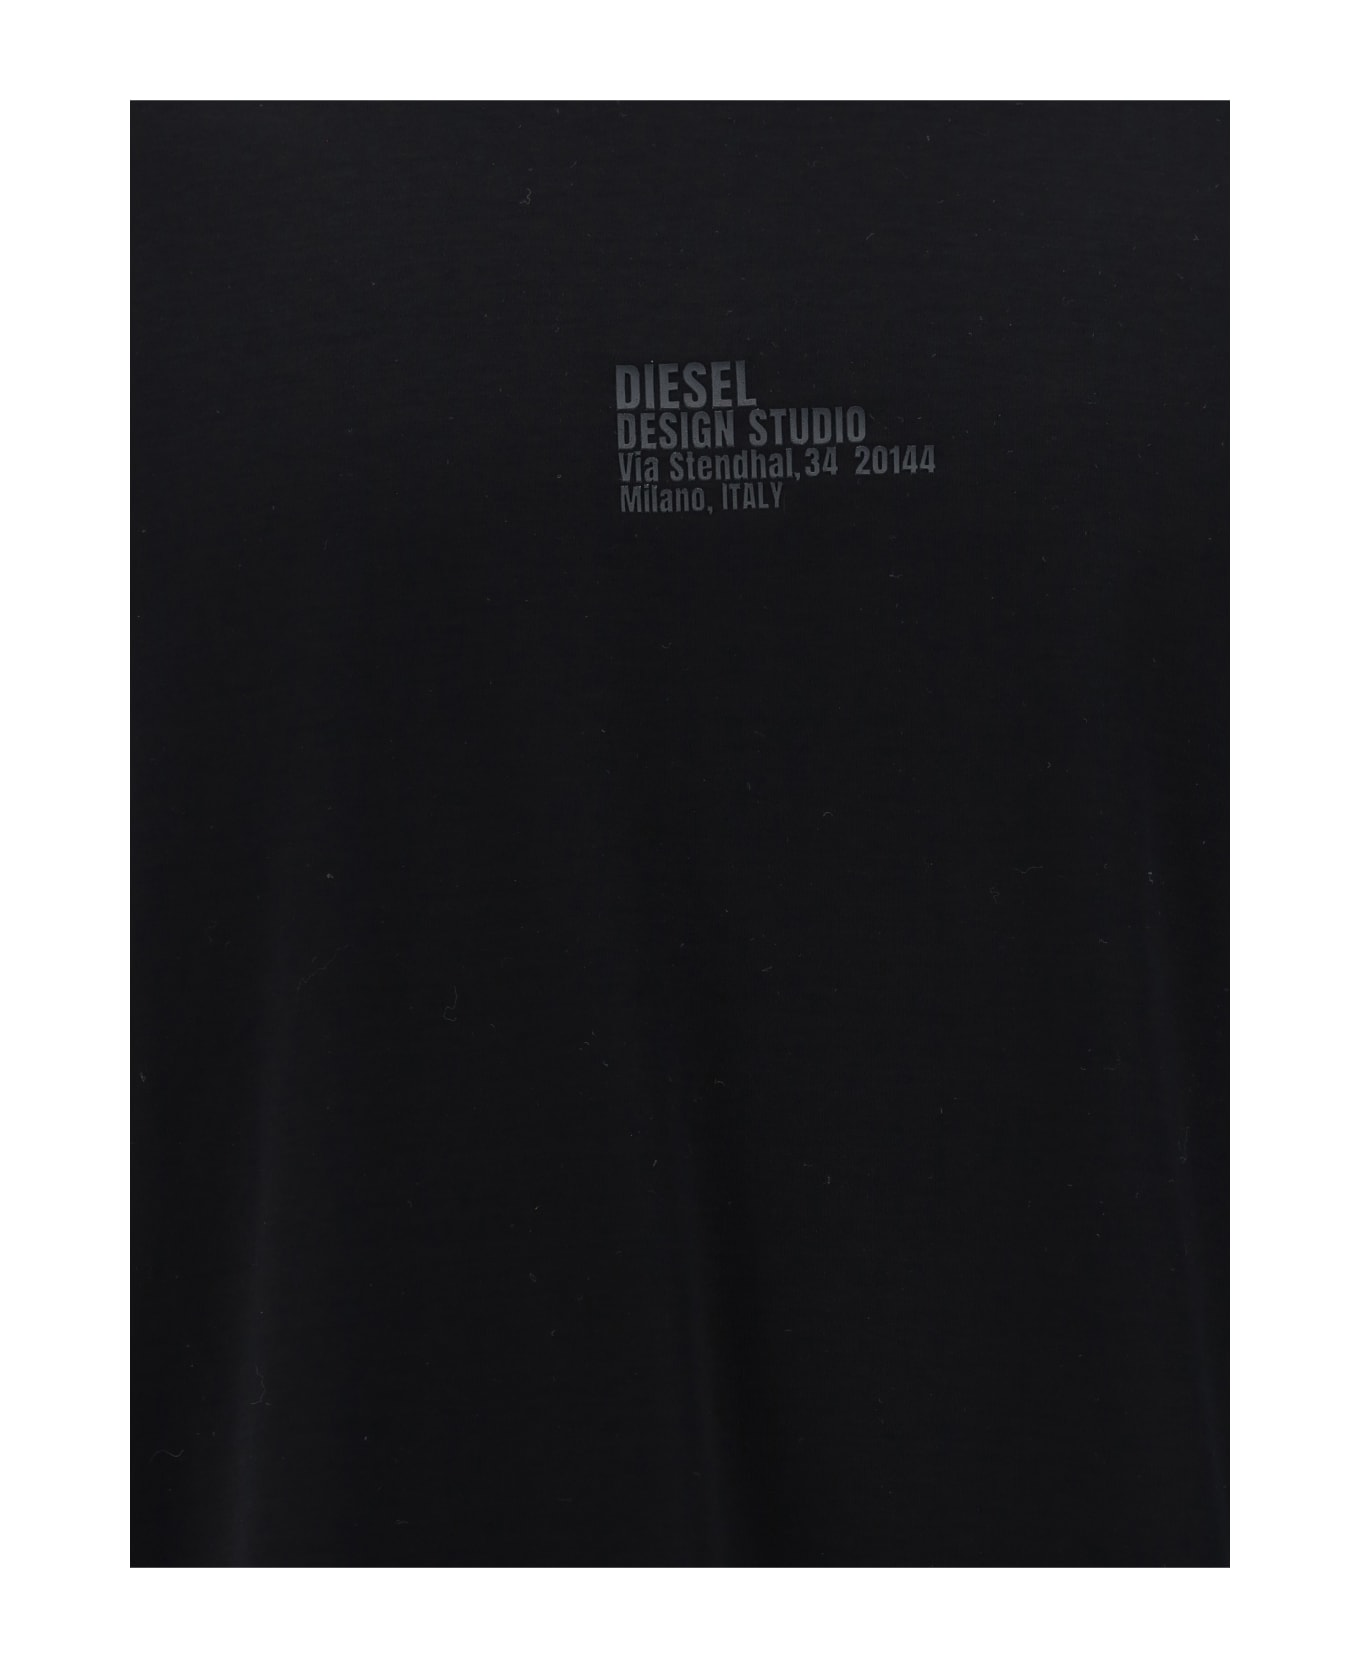 Diesel T-shirt - Deep/black